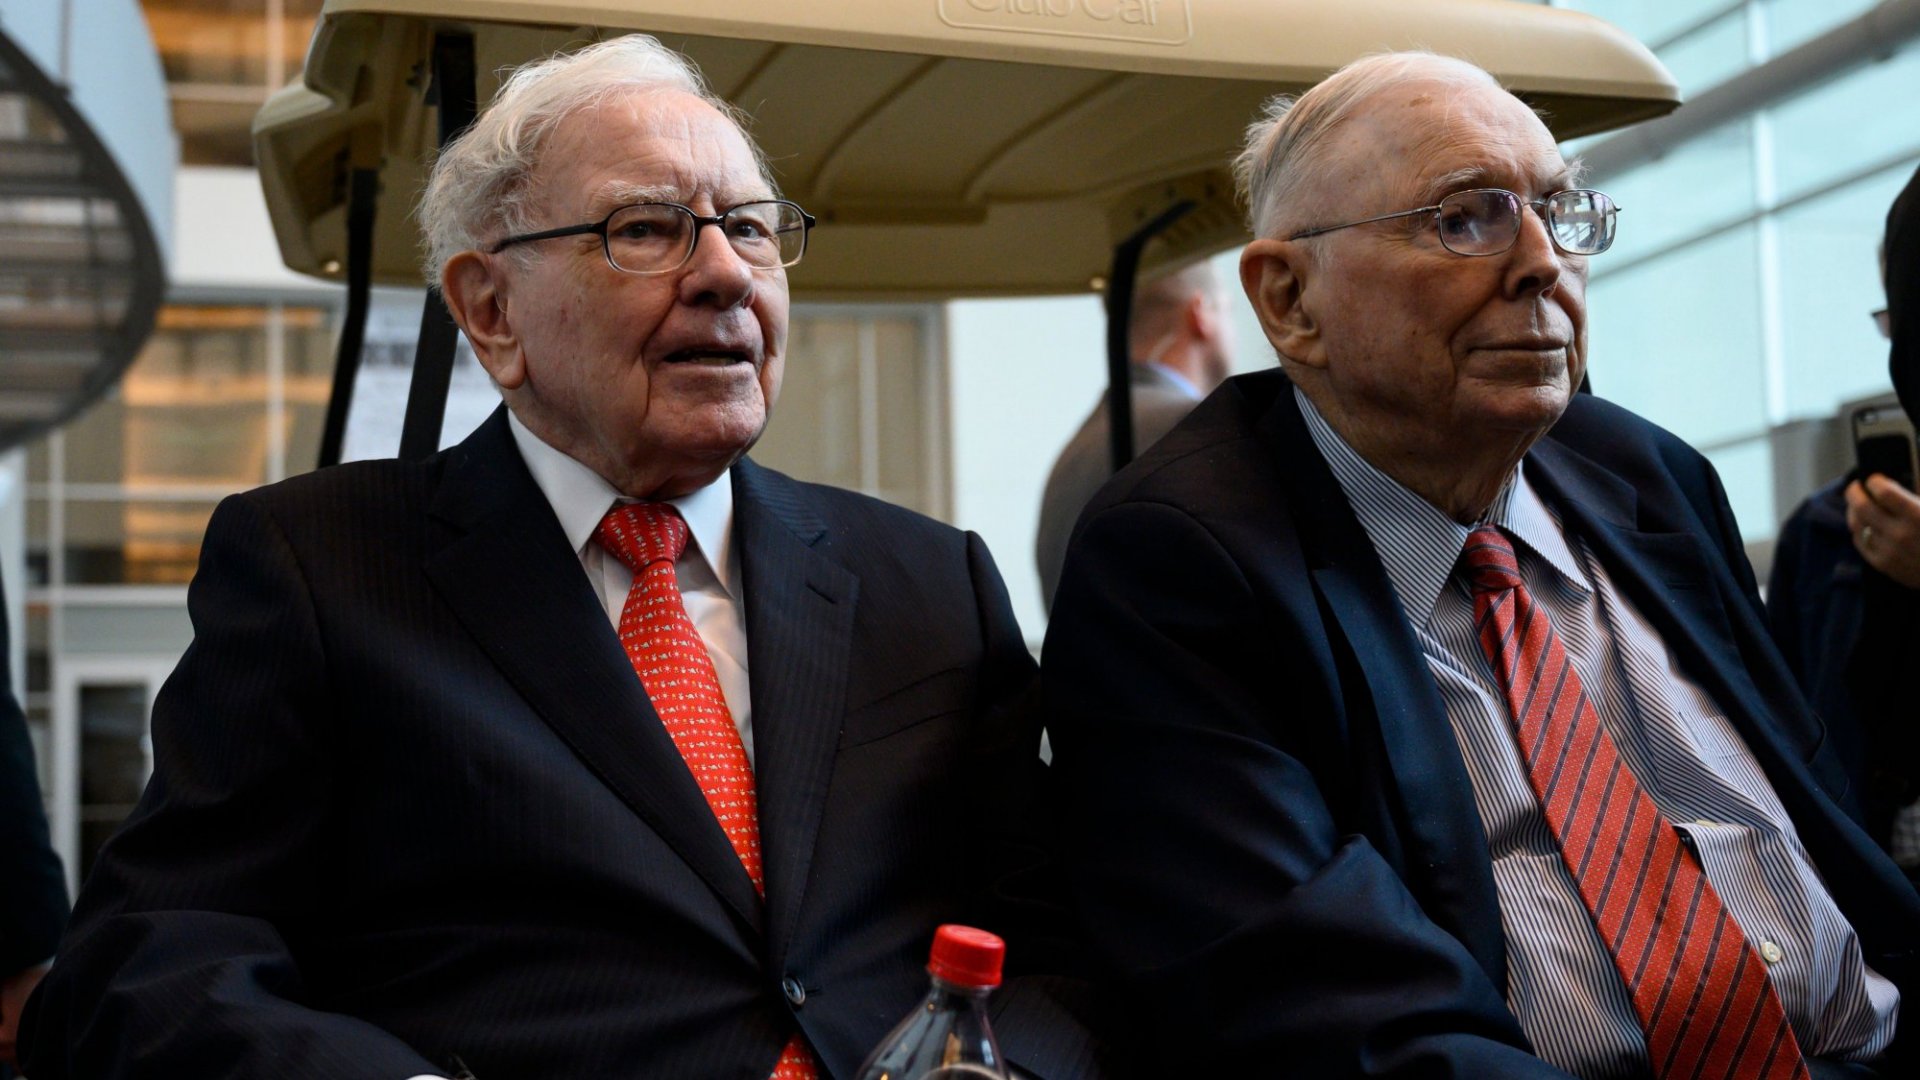 ‘Thần chứng khoán’ Warren Buffett từng ‘ôm trái đắng’ khi đầu tư, tới khi gặp 2 quý nhân thì ‘đổi vận’ - Ảnh 3.